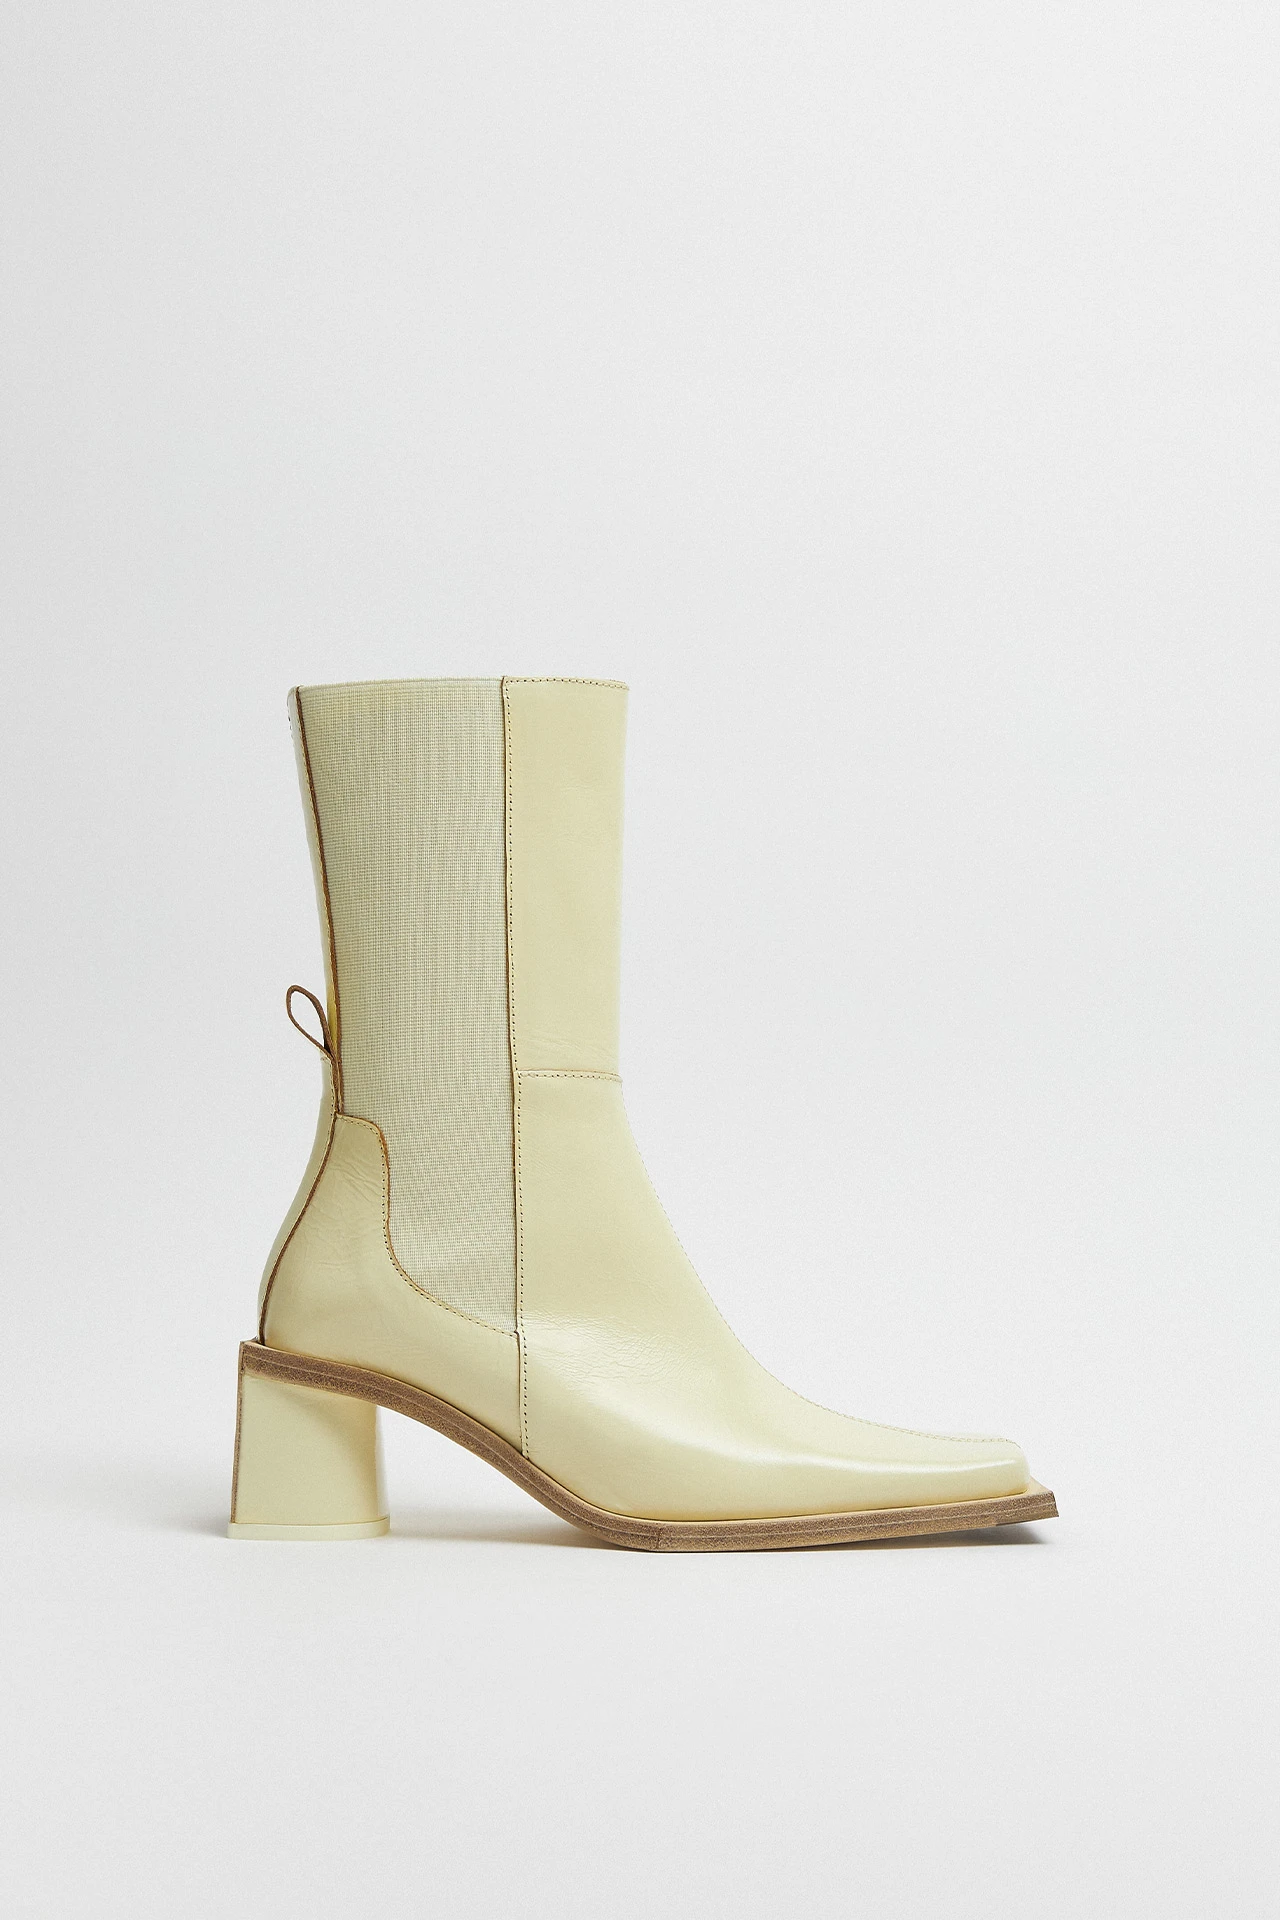 Miista-minnie-white-cream-boots-01